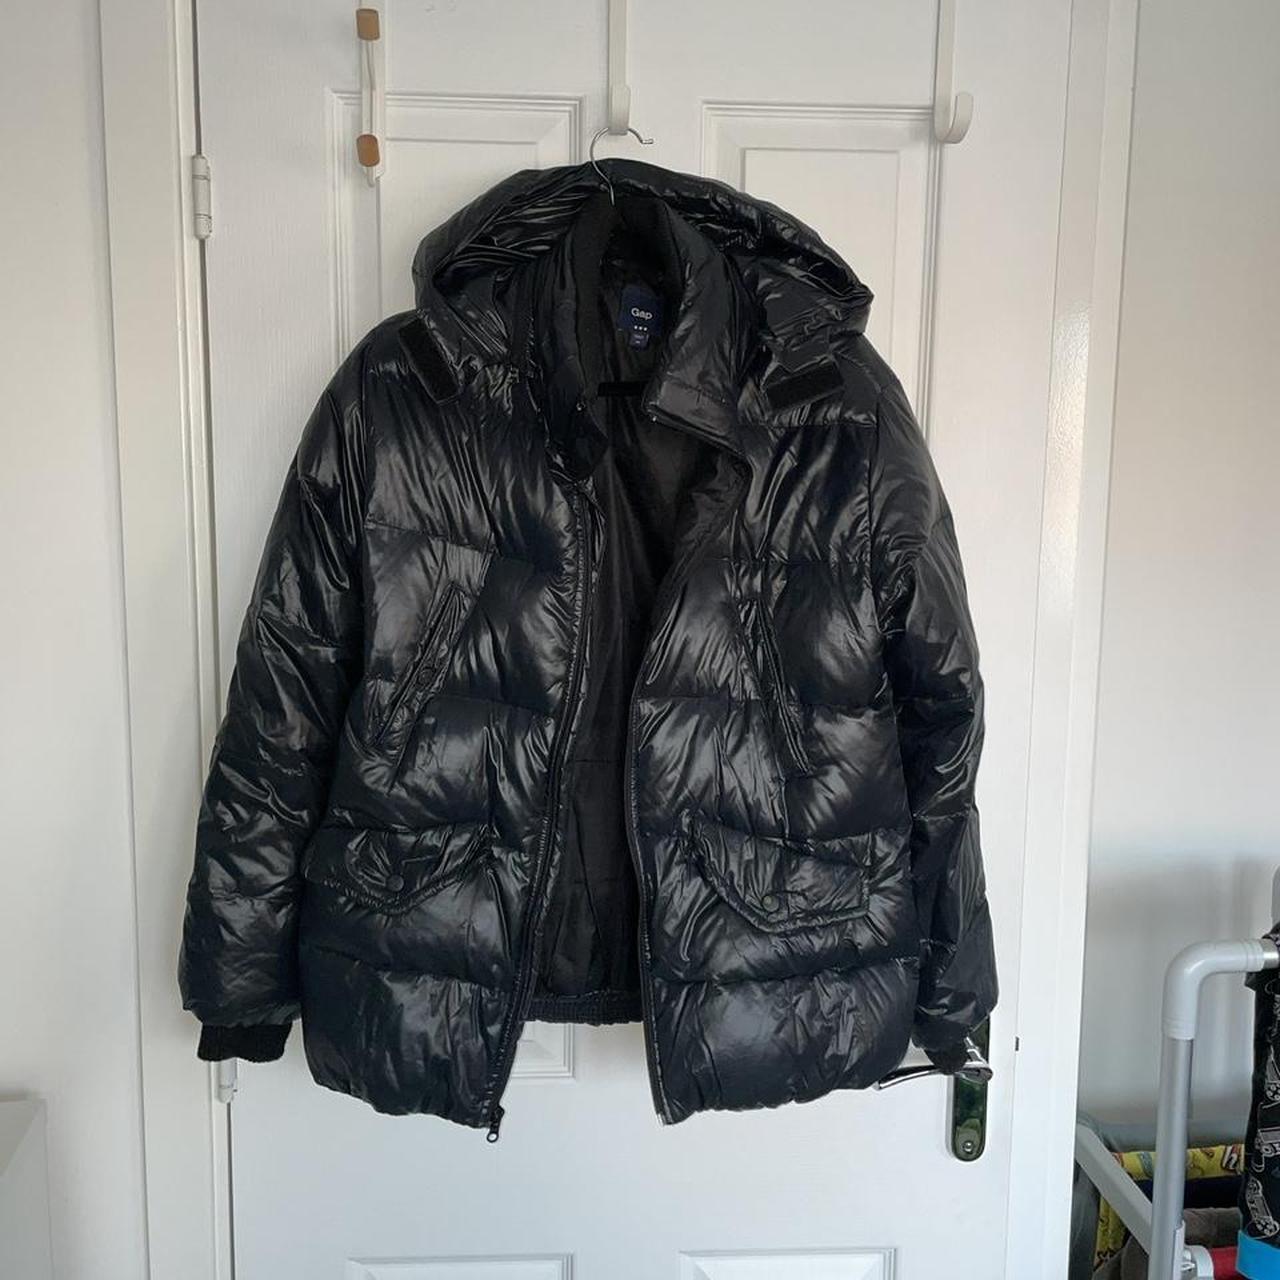 GAP shiny Puffa jacket Size - XS (Fits small)... - Depop